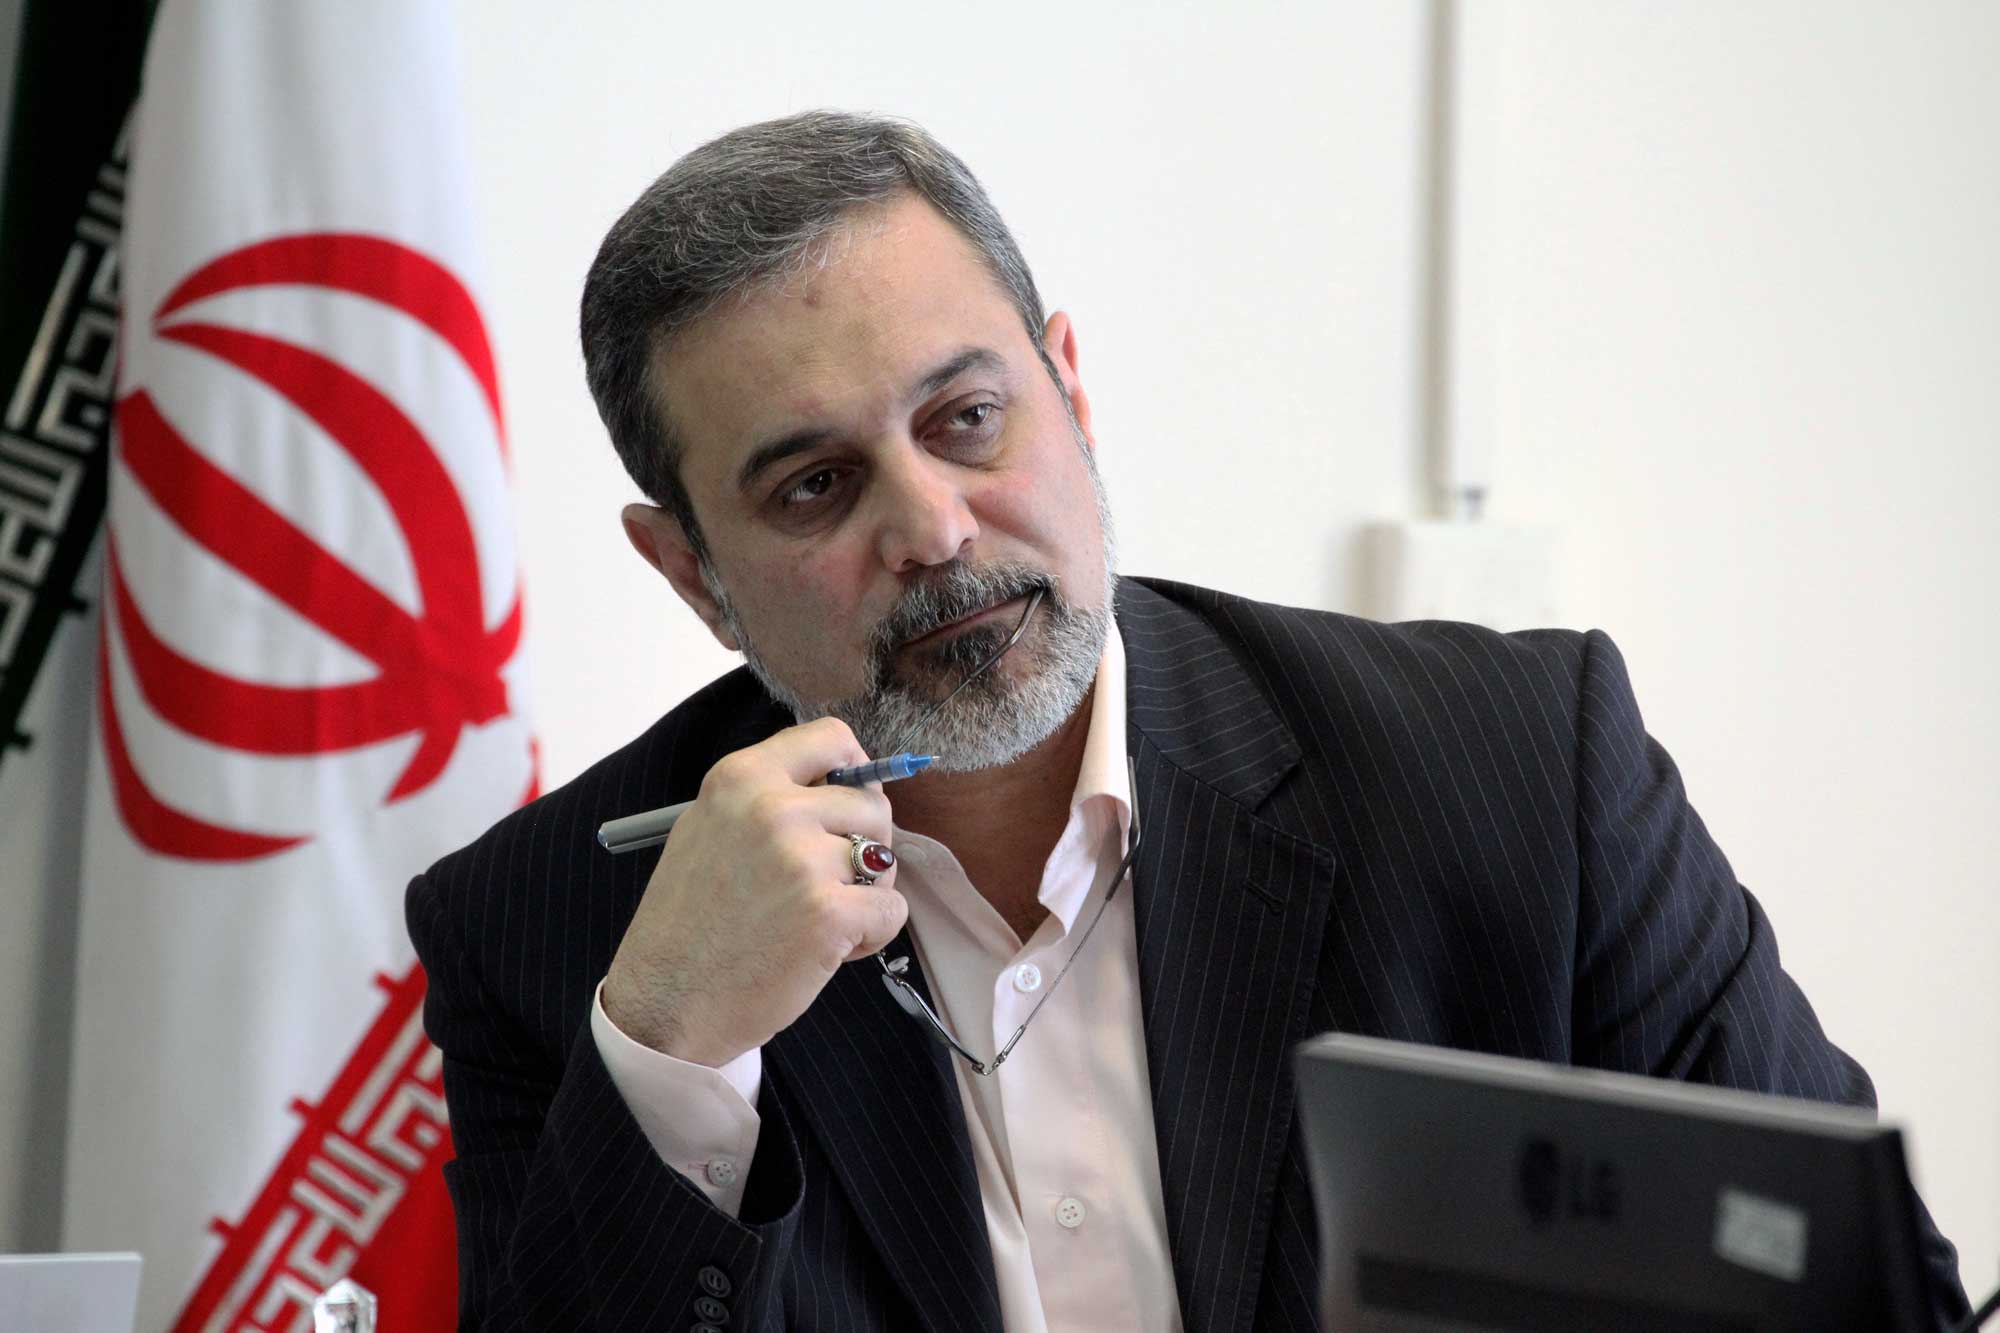 وزارت آموزش و پرورش خبر پذیرش استعفای بطحایی را تکذیب کرد